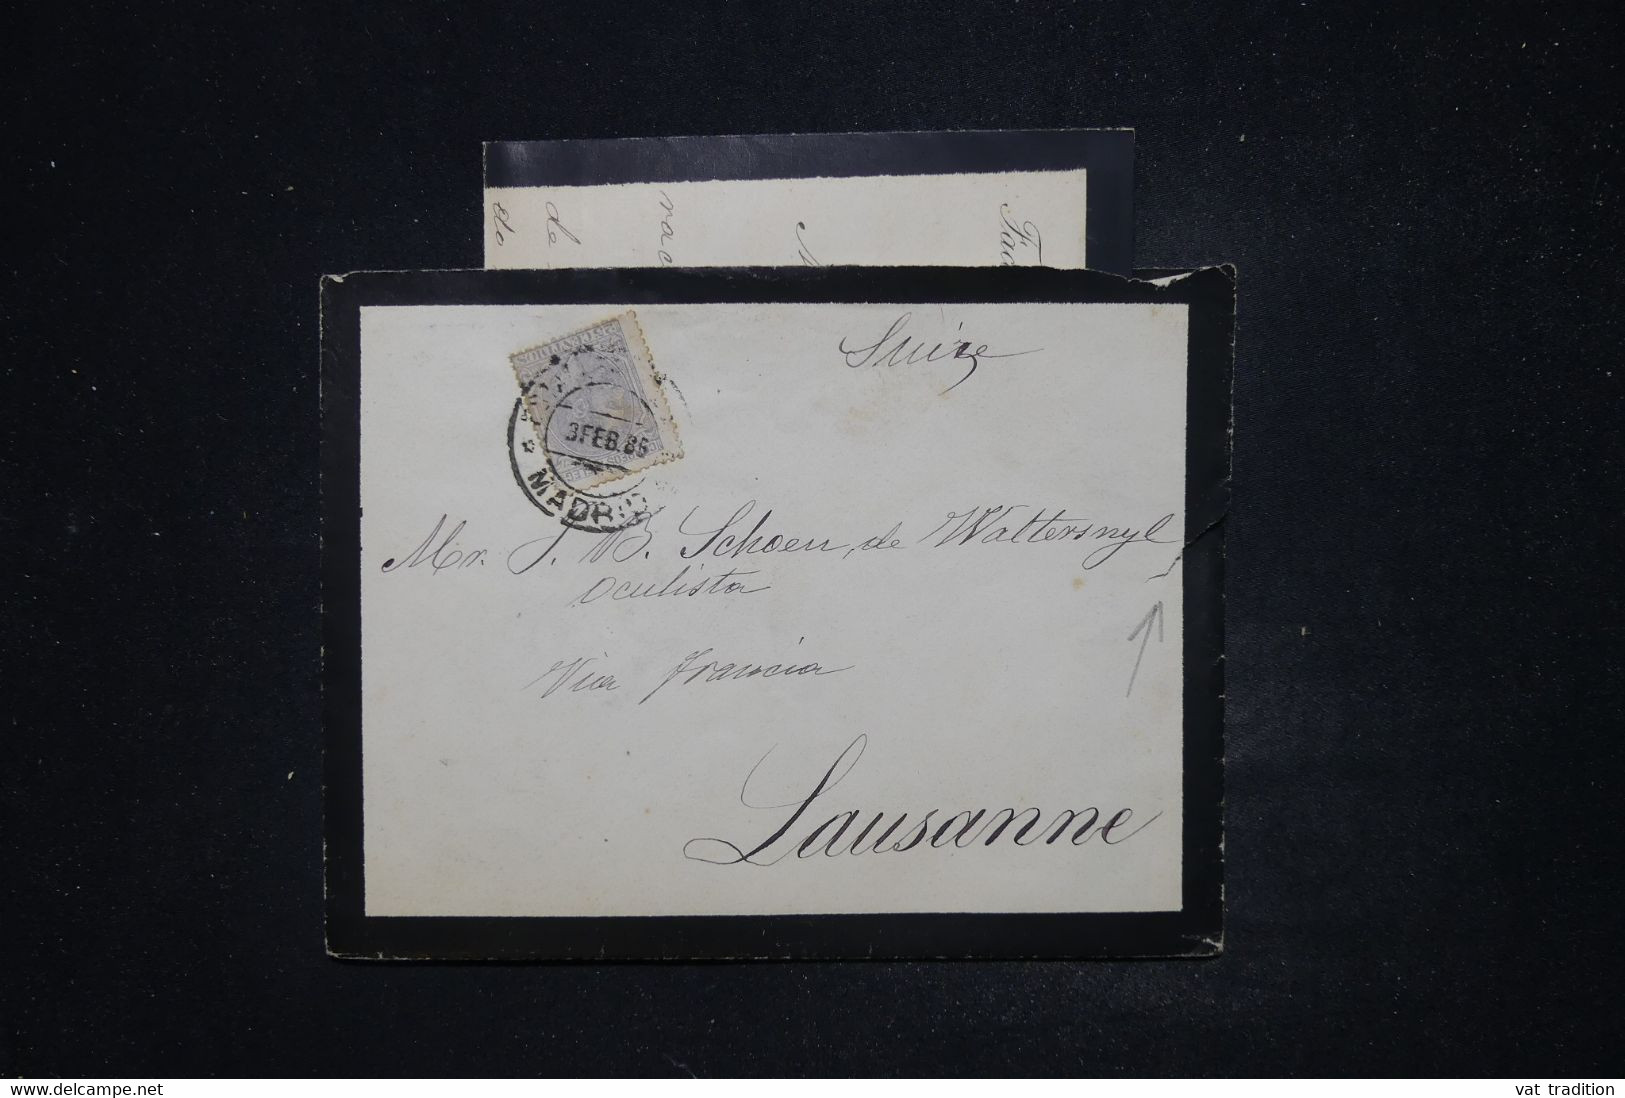 ESPAGNE - Enveloppe + Contenu De Madrid Pour La Suisse En 1886 - L 122036 - Covers & Documents